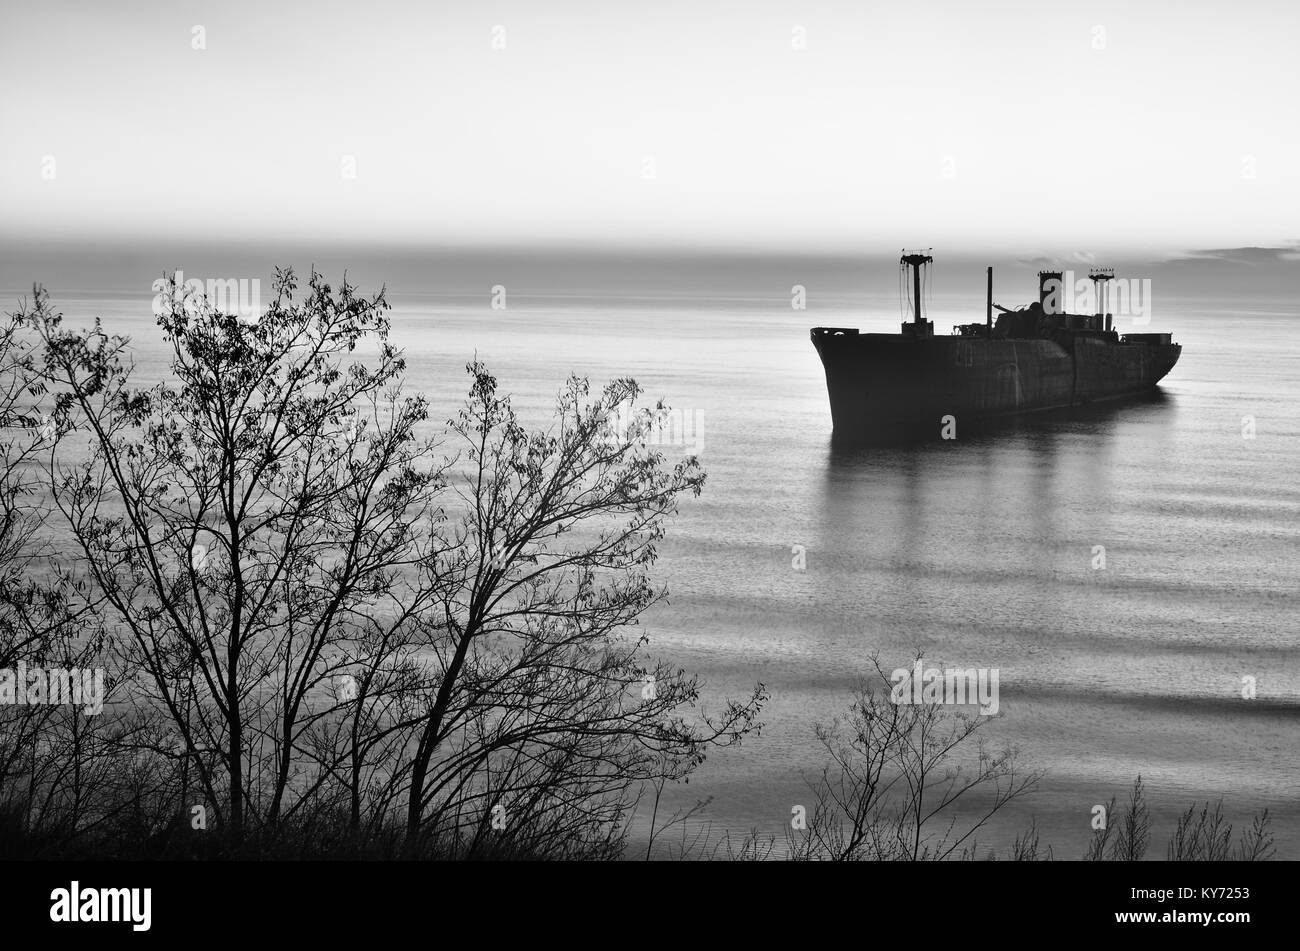 Schönen sonnenaufgang Haze mit einem griechischen Schiffbruch Evangelia am Ufer des Schwarzen Meeres in der Nähe von turda, Rumänien. Stockfoto